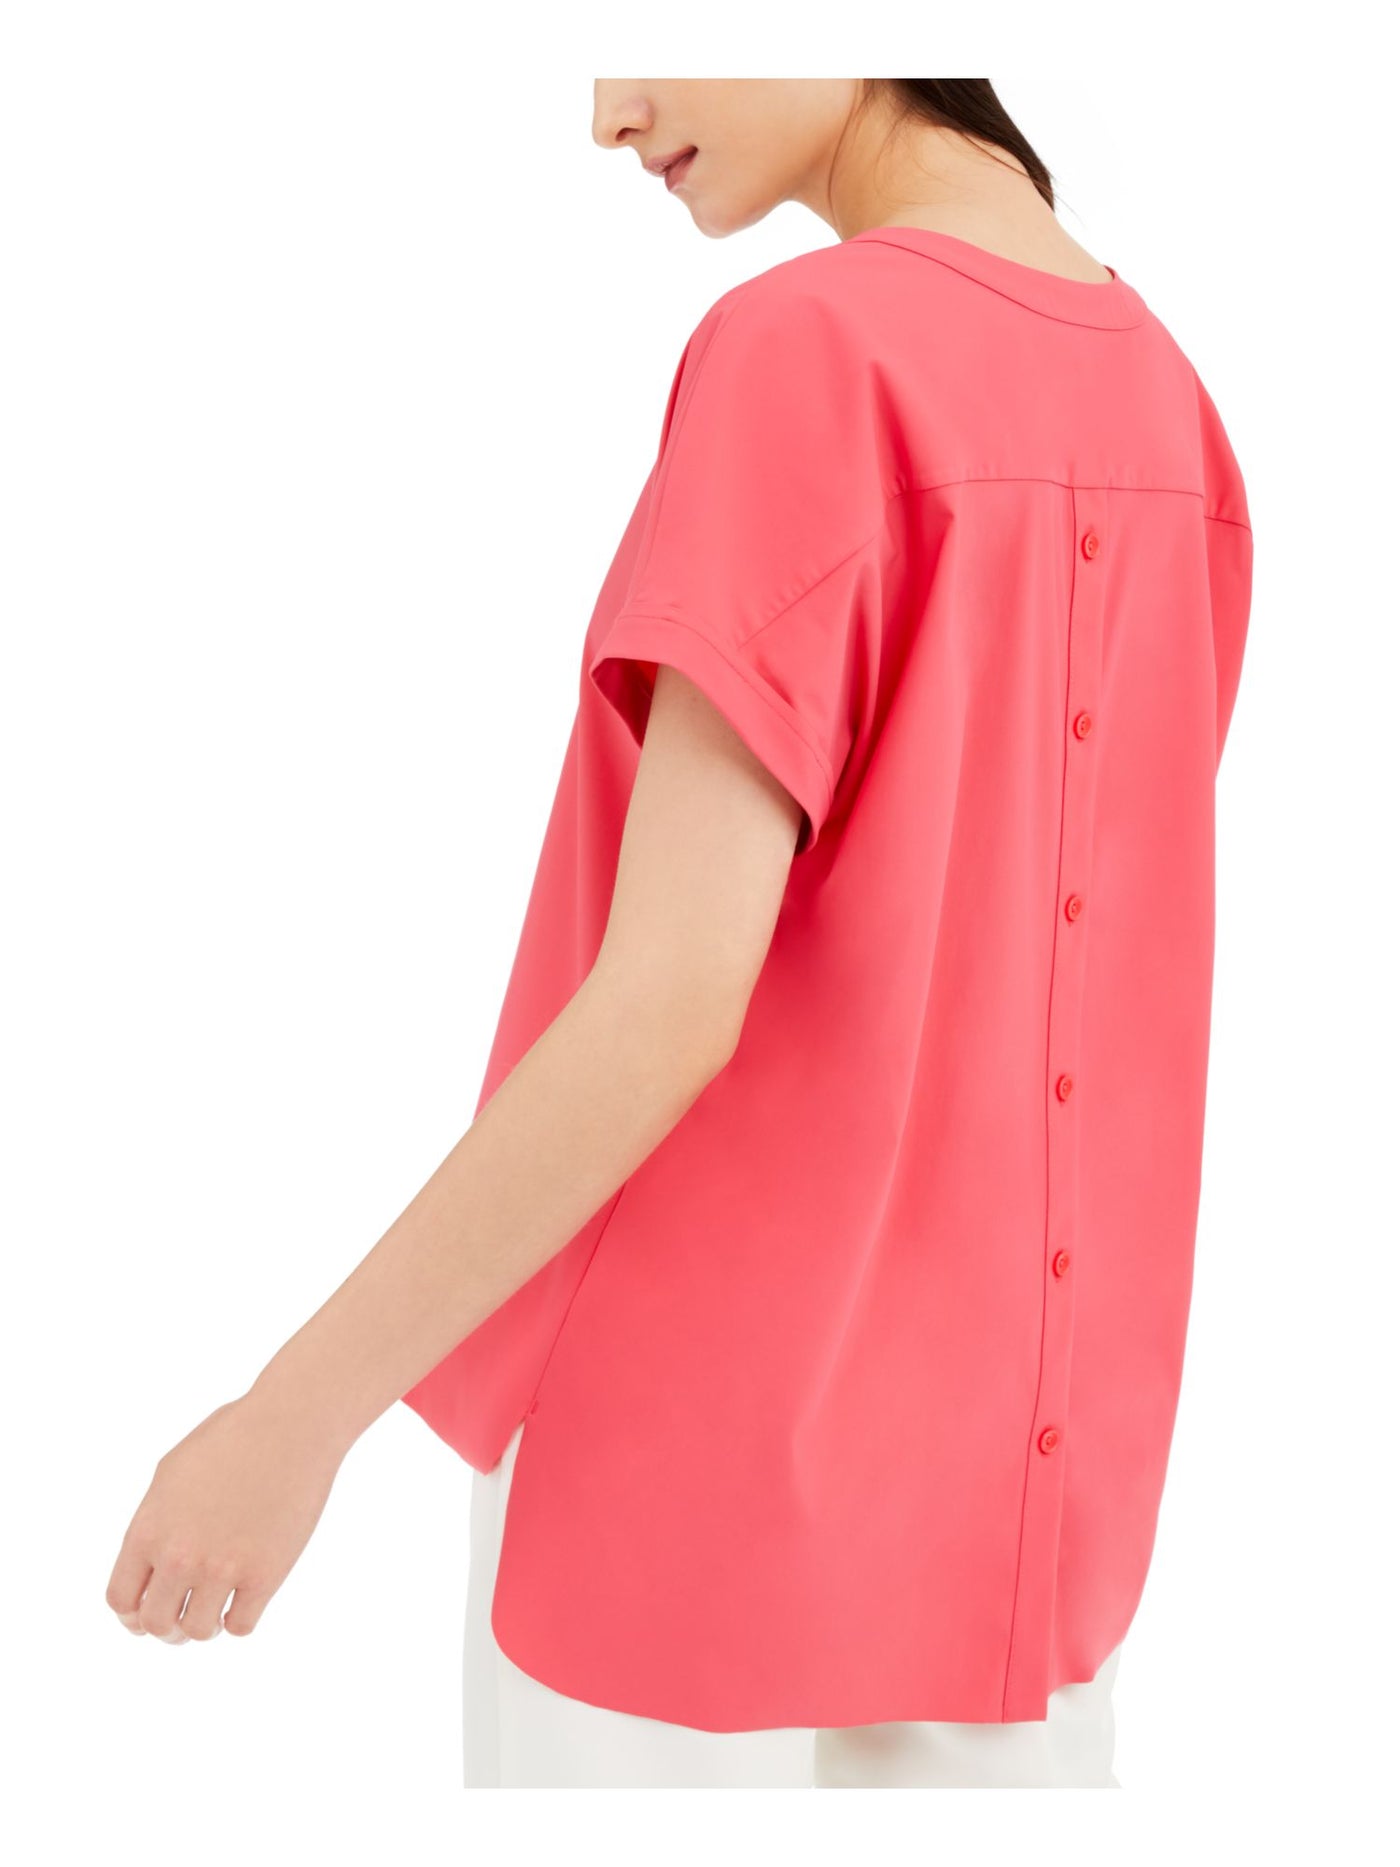 ALFANI Womens Pink Short Sleeve V Neck Hi-Lo Top S